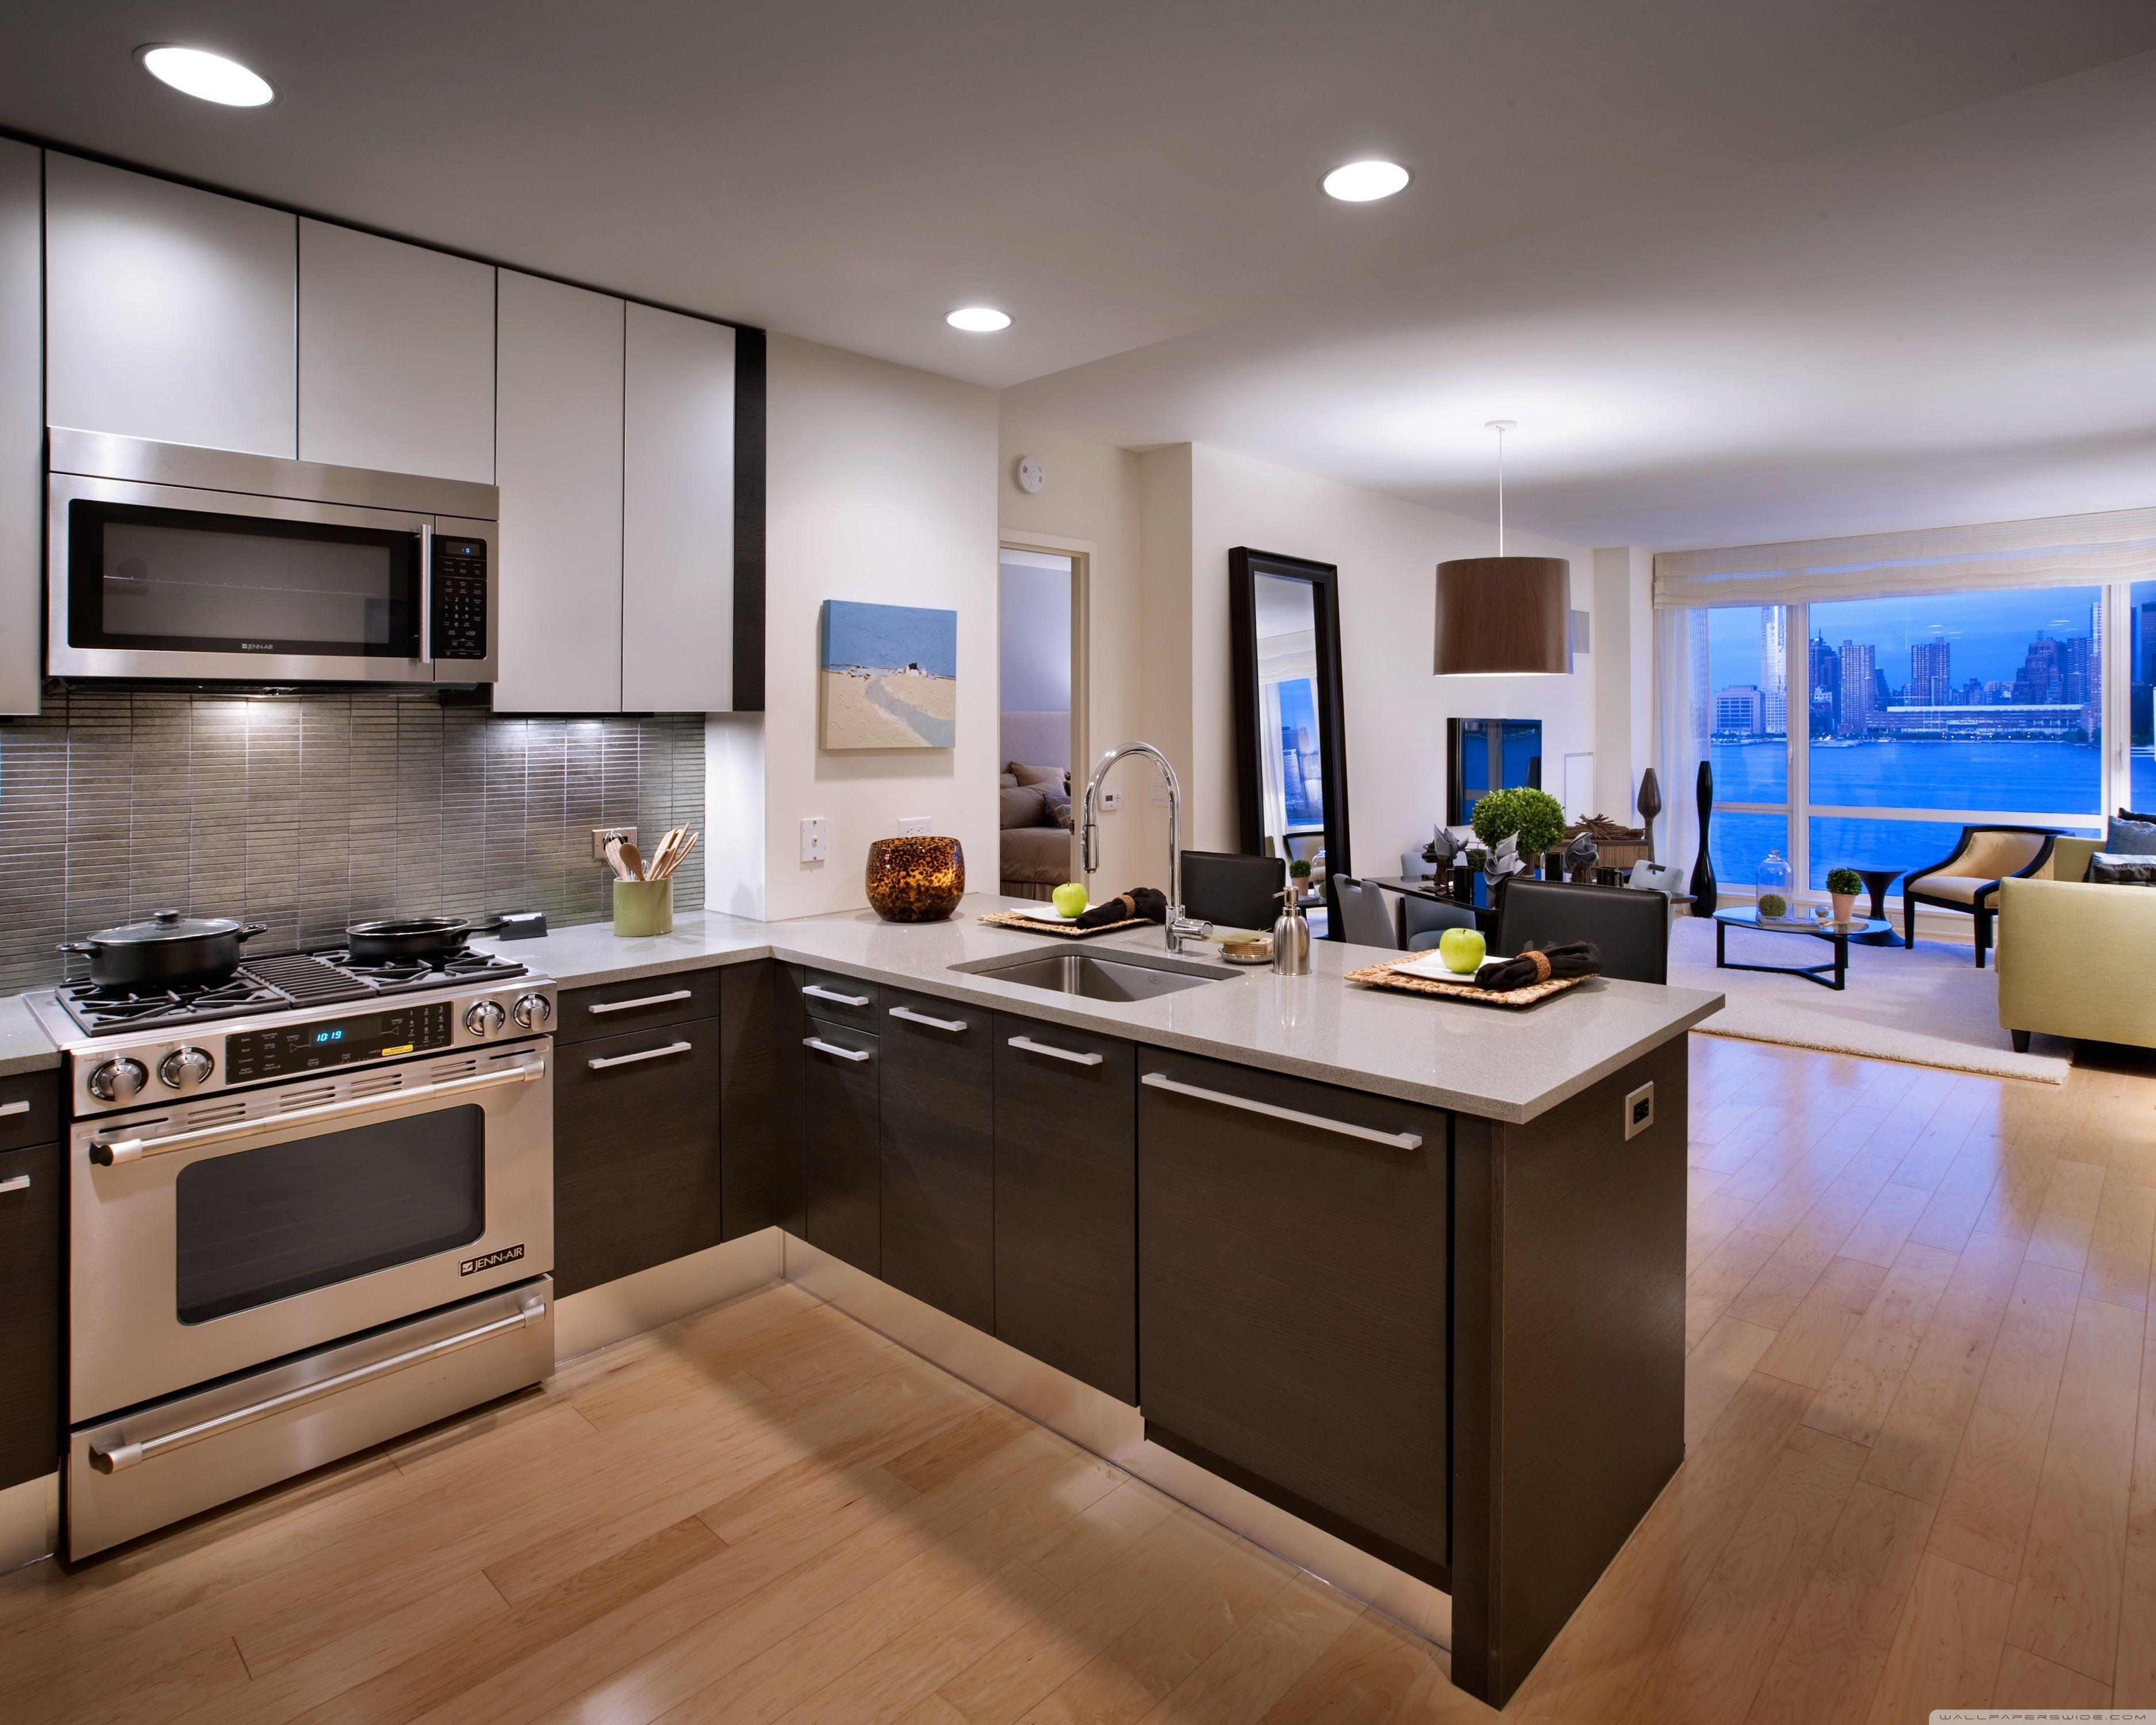 Modern Kitchen HD desktop wallpaper, High Definition, Fullscreen